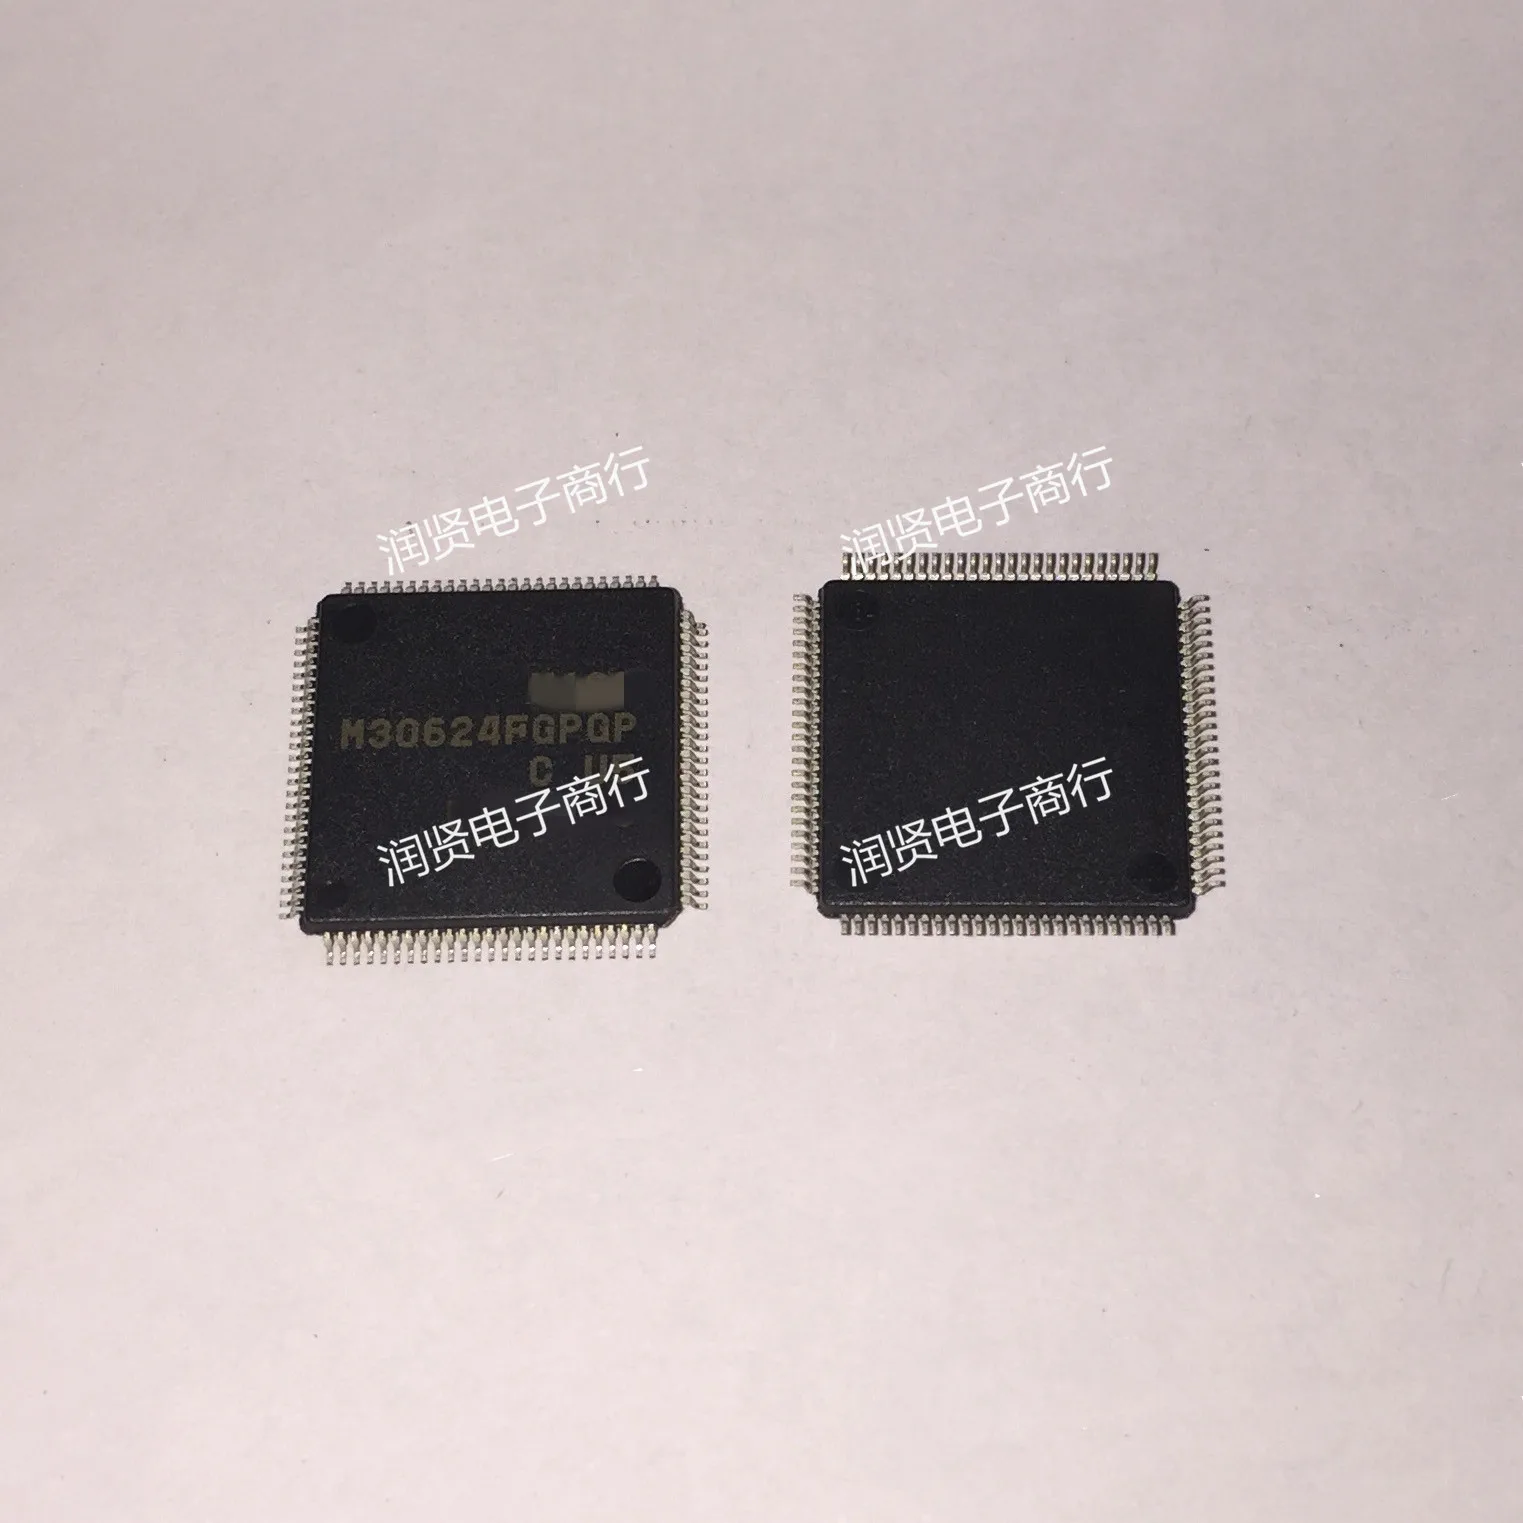 1pcs-m30624fgpgp-u5c-m30624fgpgp-qfp-brand-new-original-ic-chip